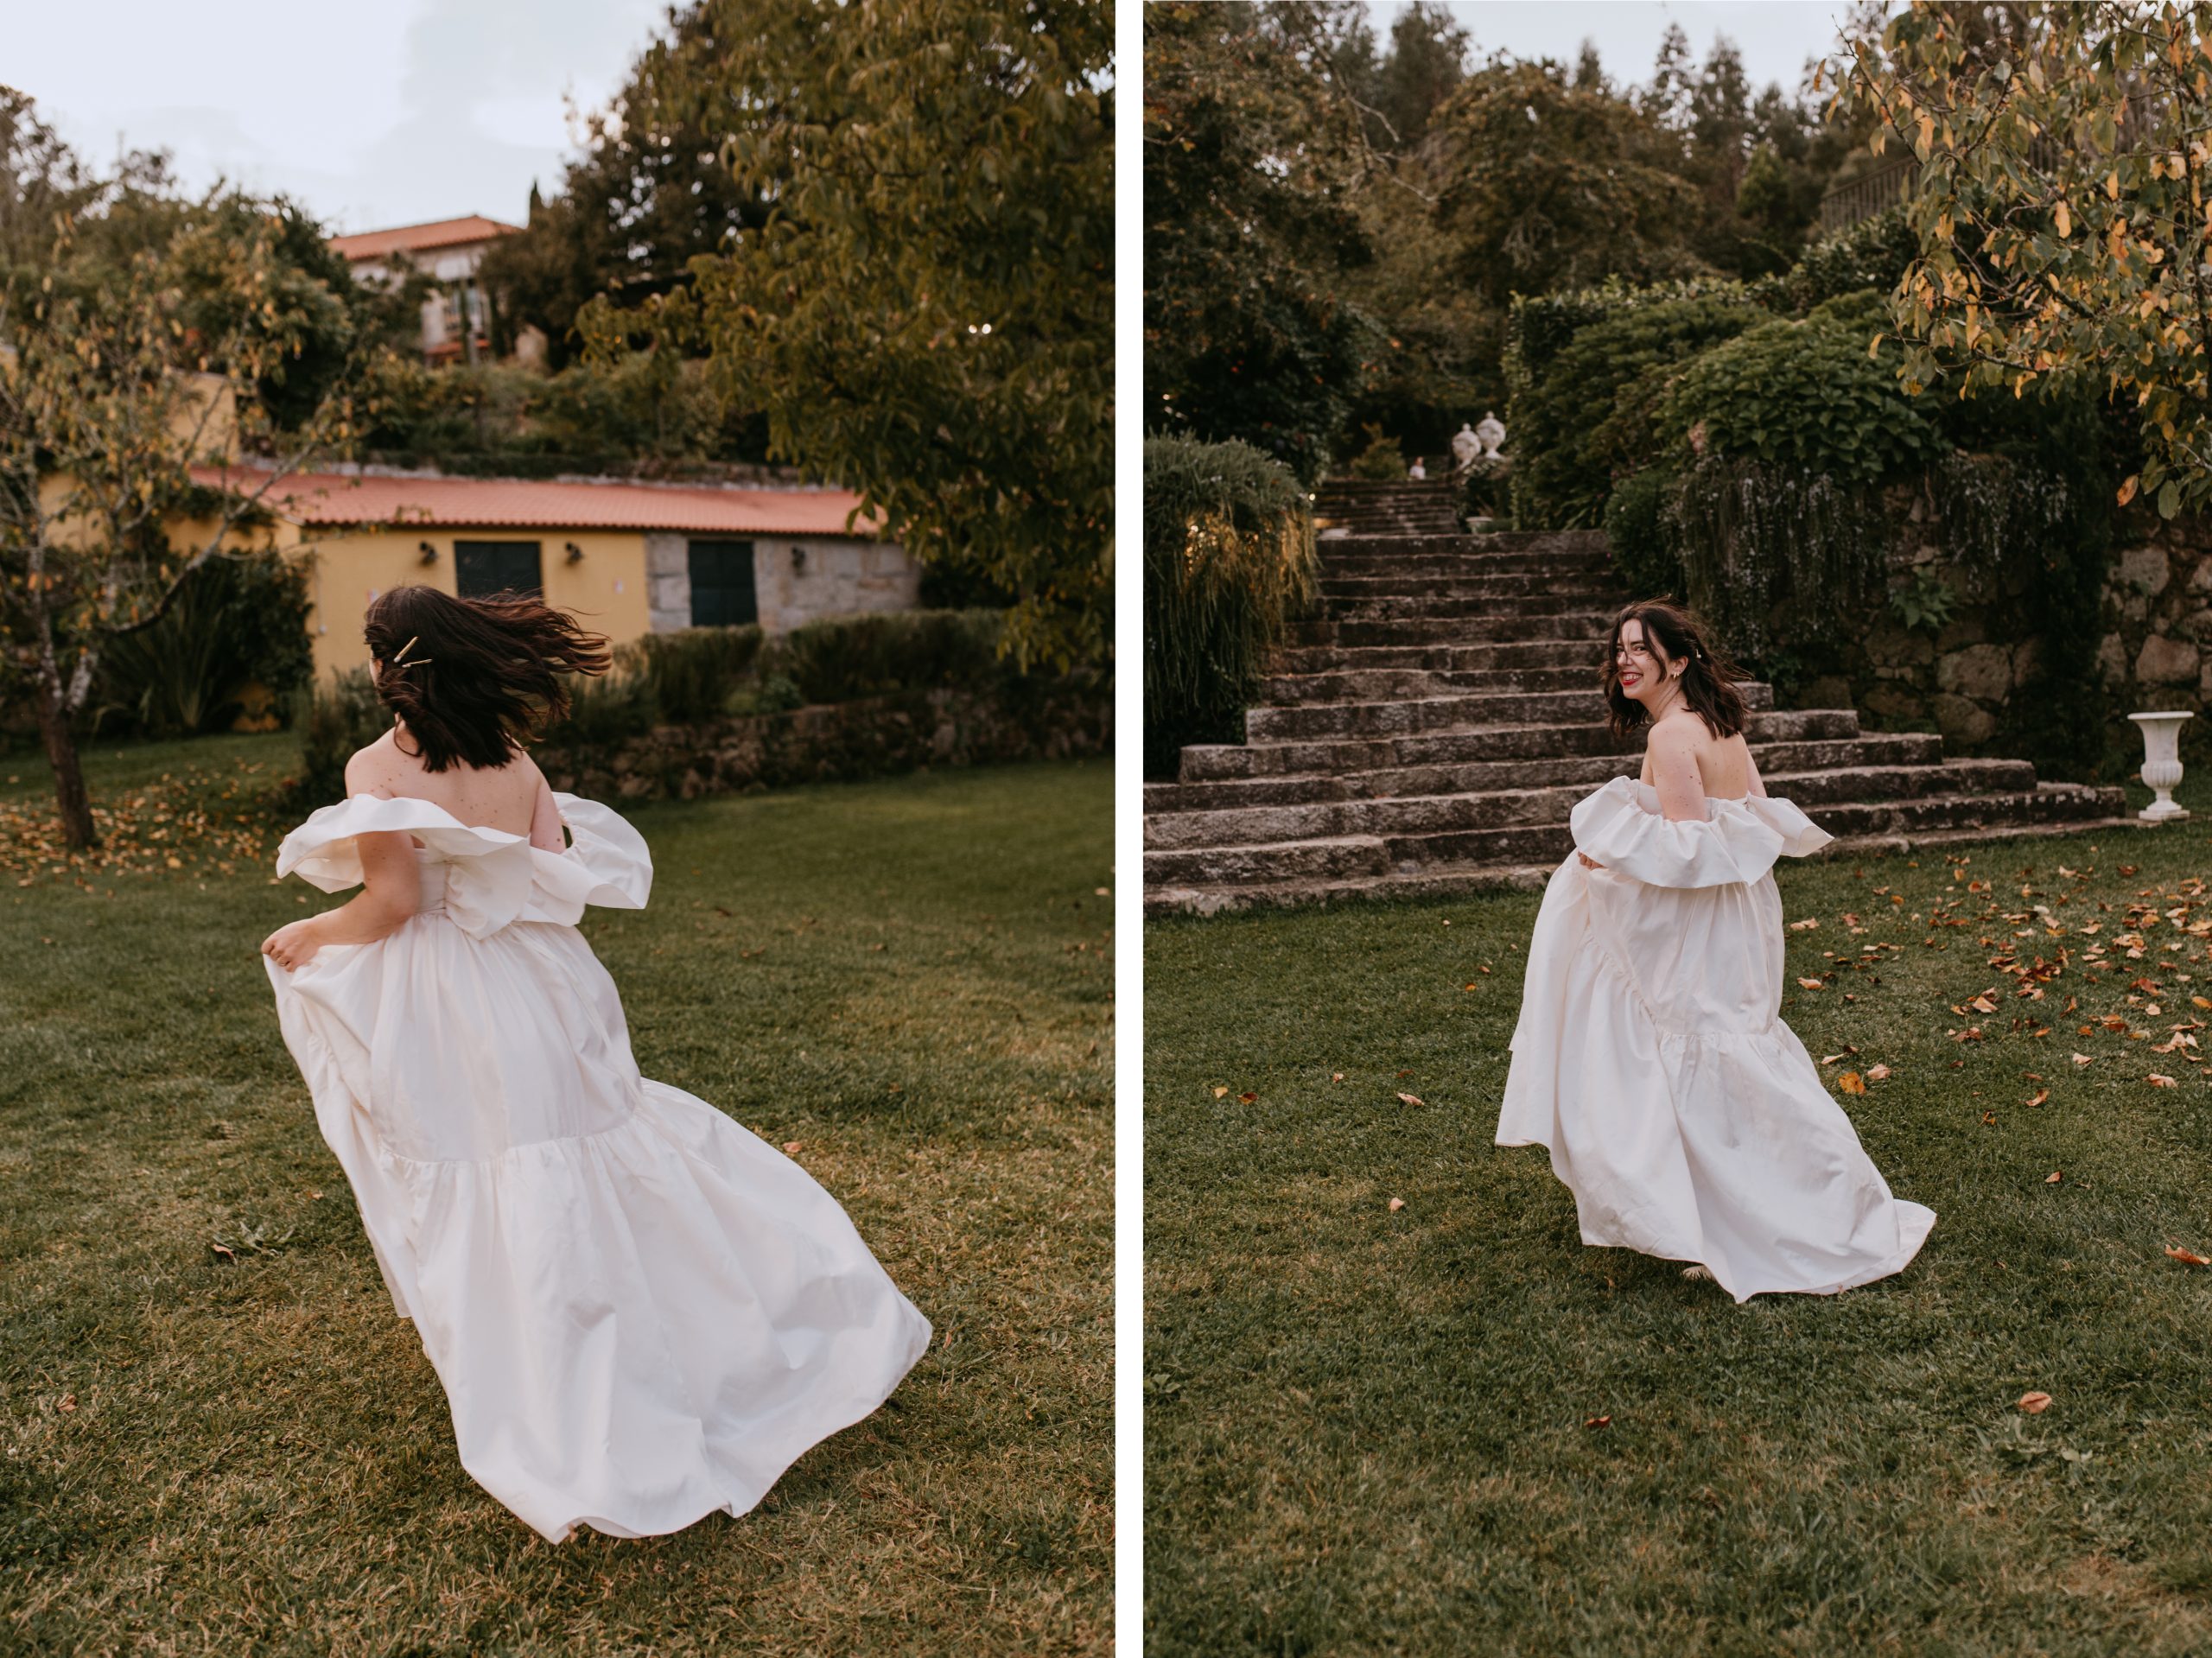 Ana + Hugo – A Dreamy Wedding at The Fox House